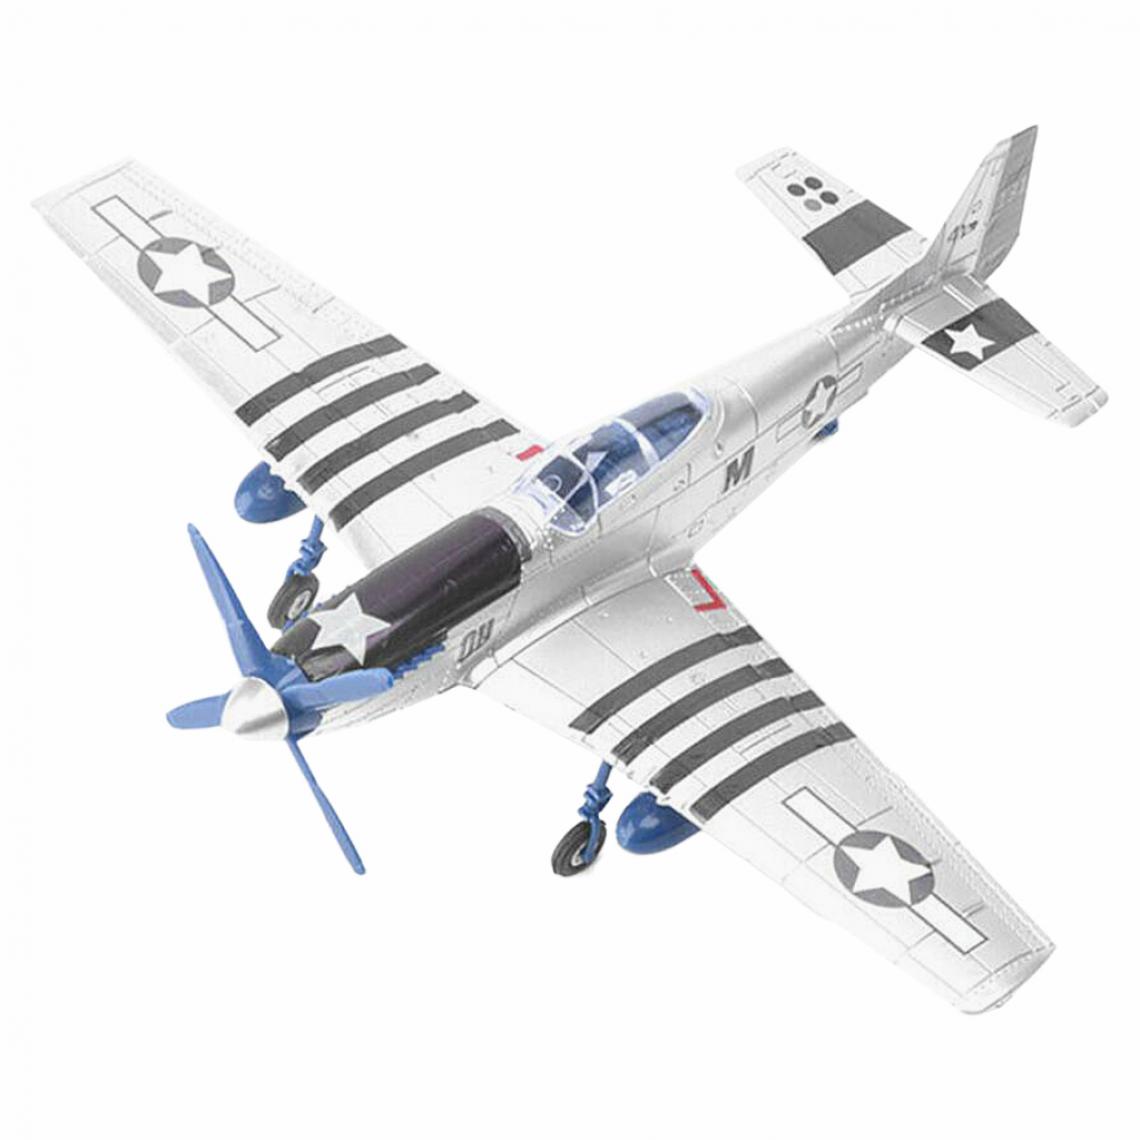 marque generique - Maquette D'assemblage D'avion P-51 à L'échelle 1:48 Pour Adulte Blanc - Voitures